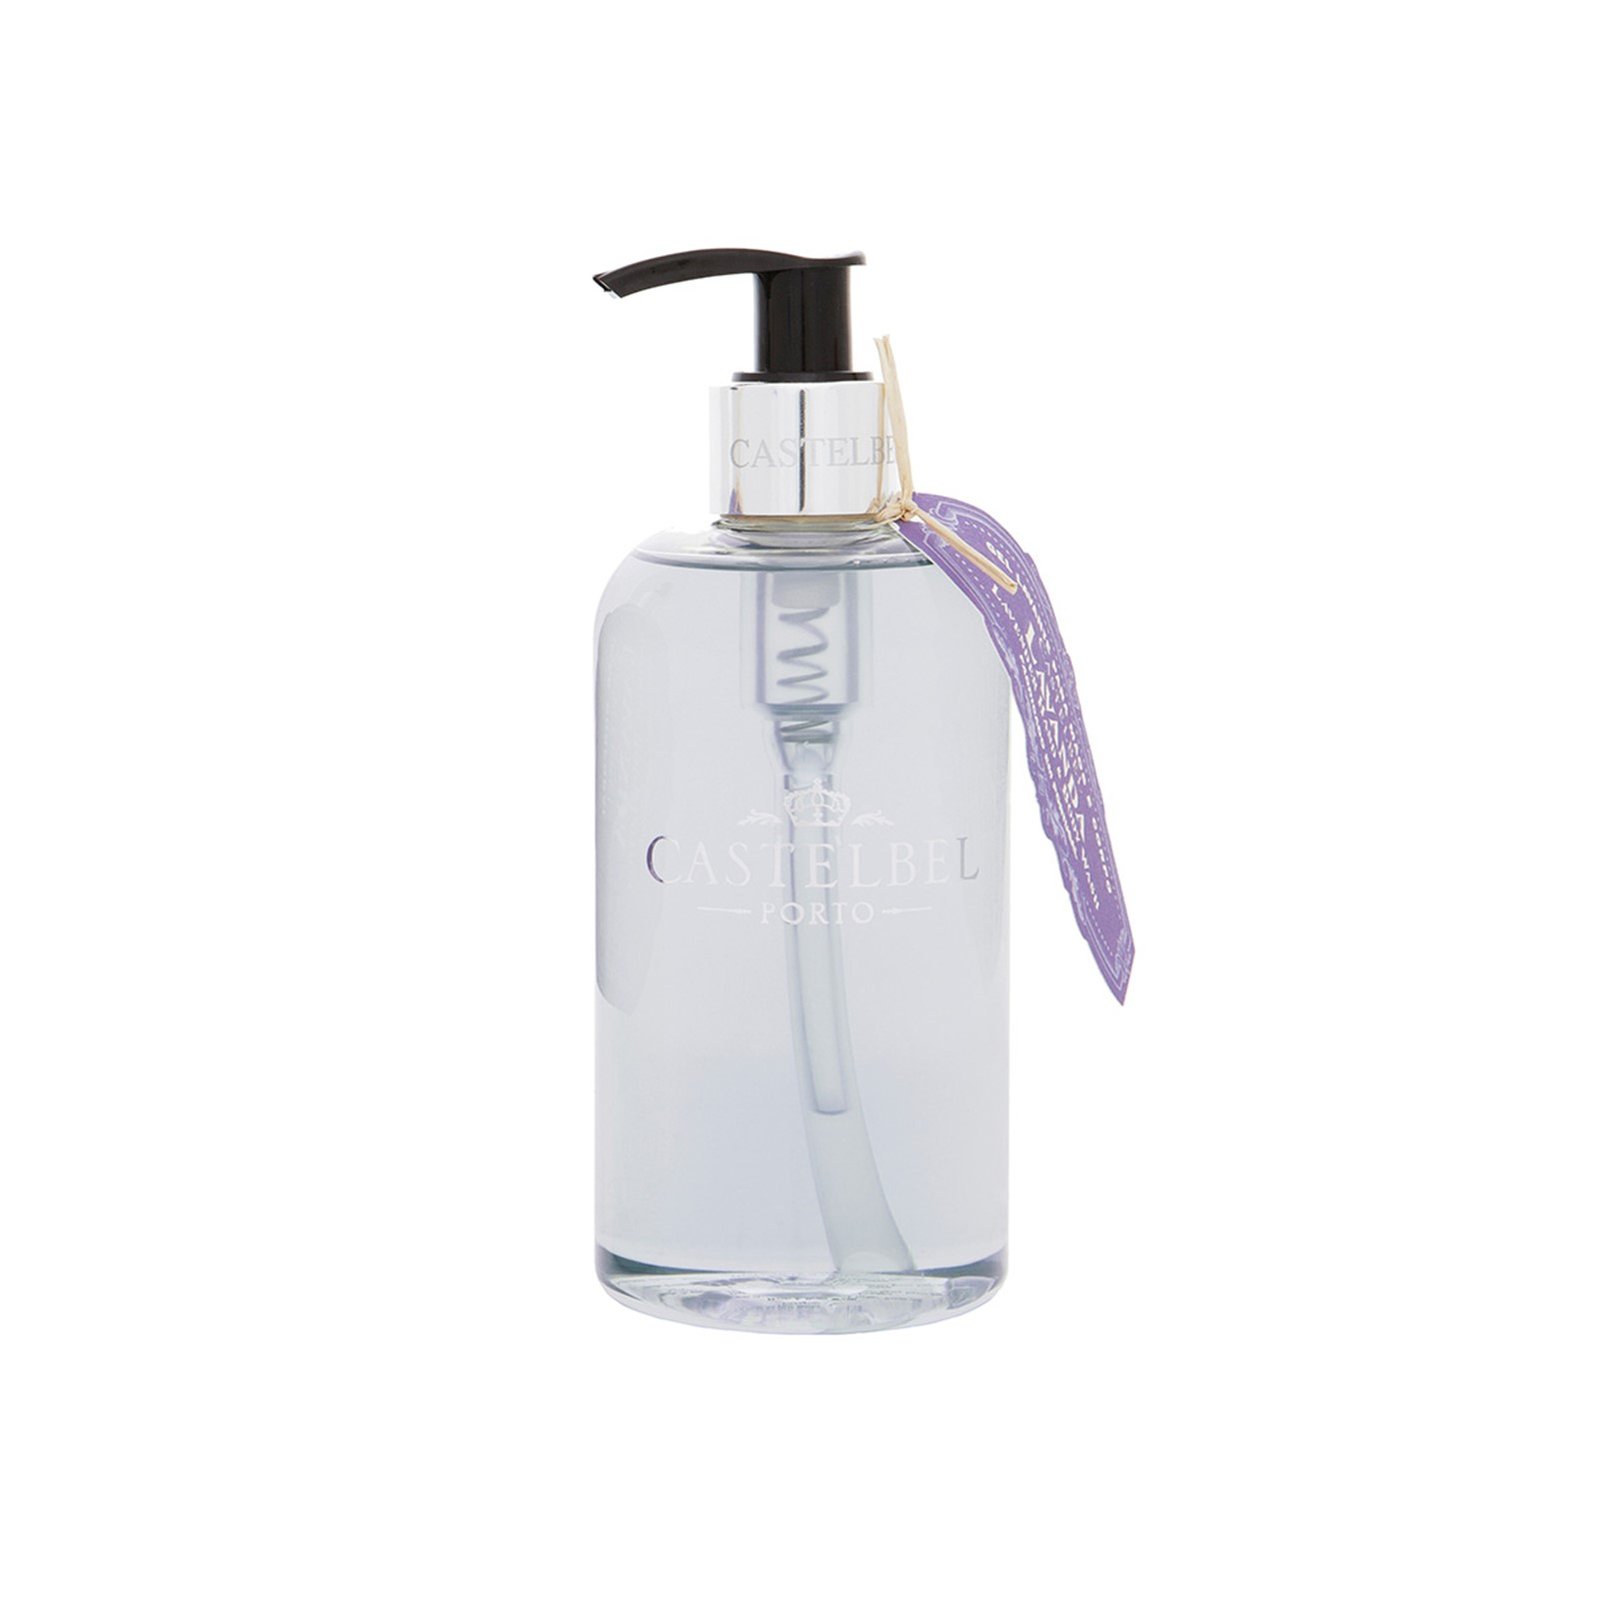 Castelbel Lavender Hand & Body Wash 300ml (10.2 fl oz)